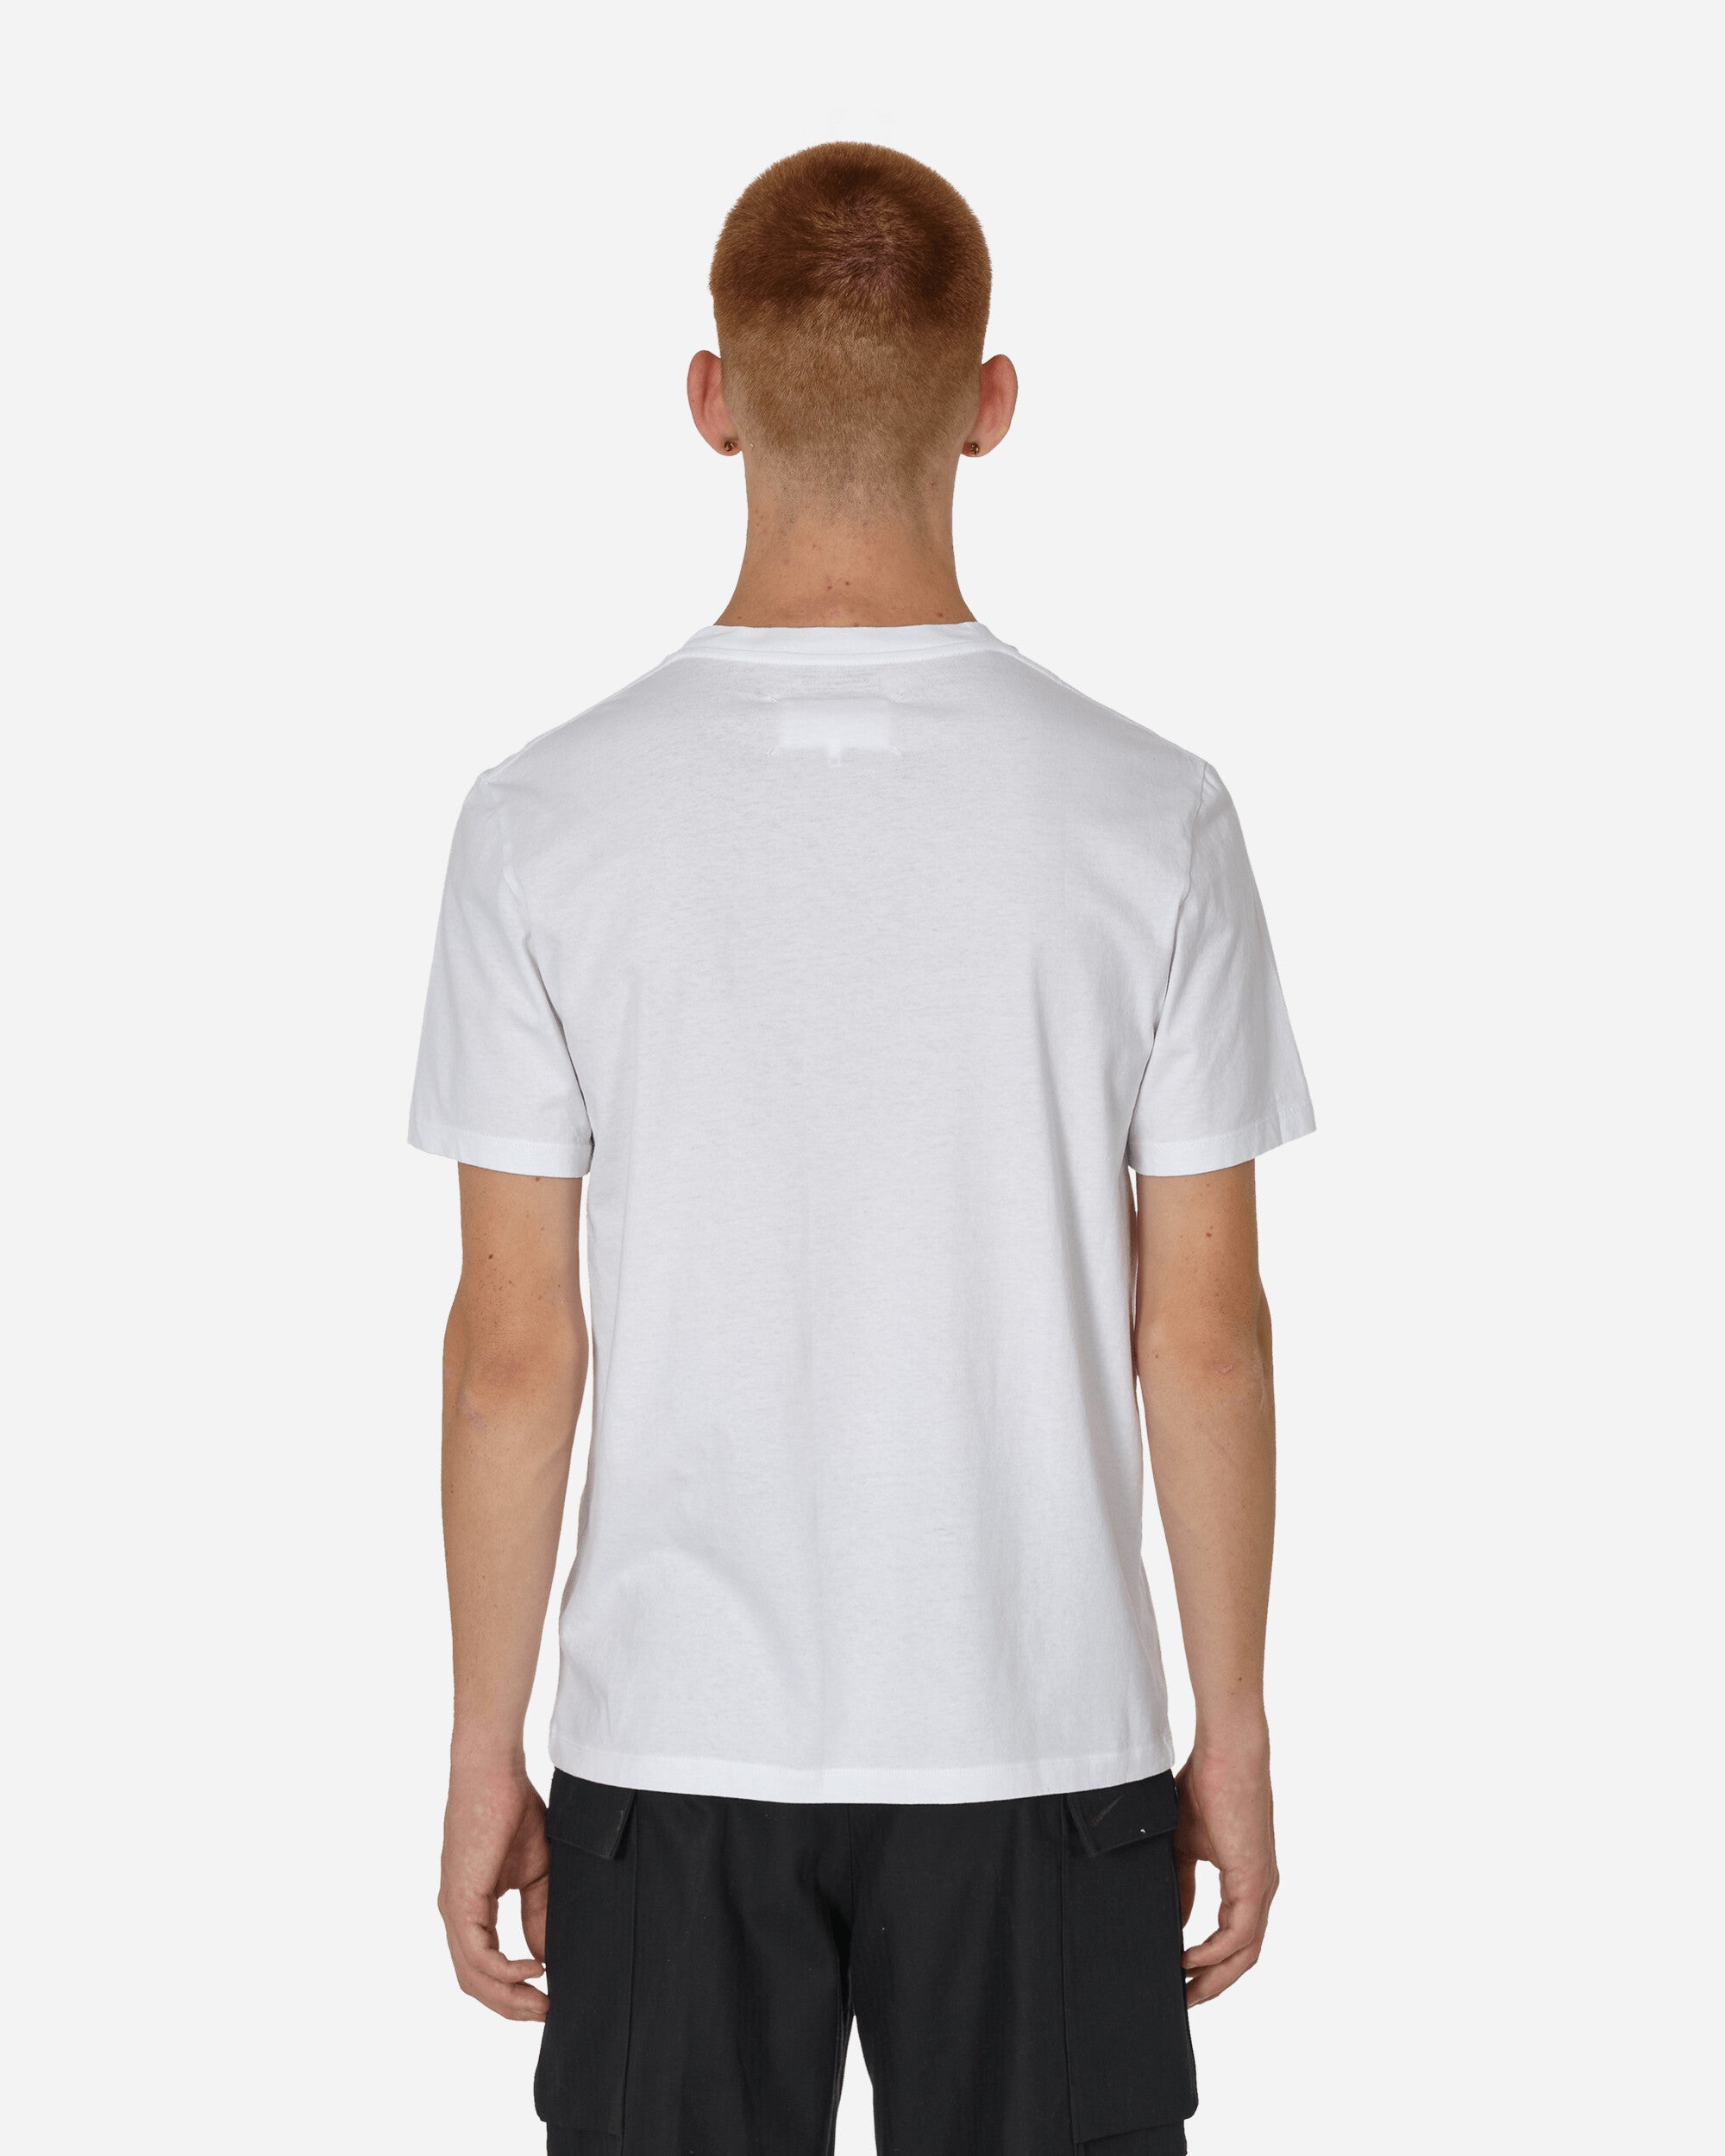 Maison Margiela T-Shirt - 3 Pack Shades of white T-Shirts Shortsleeve S50GC0687 963